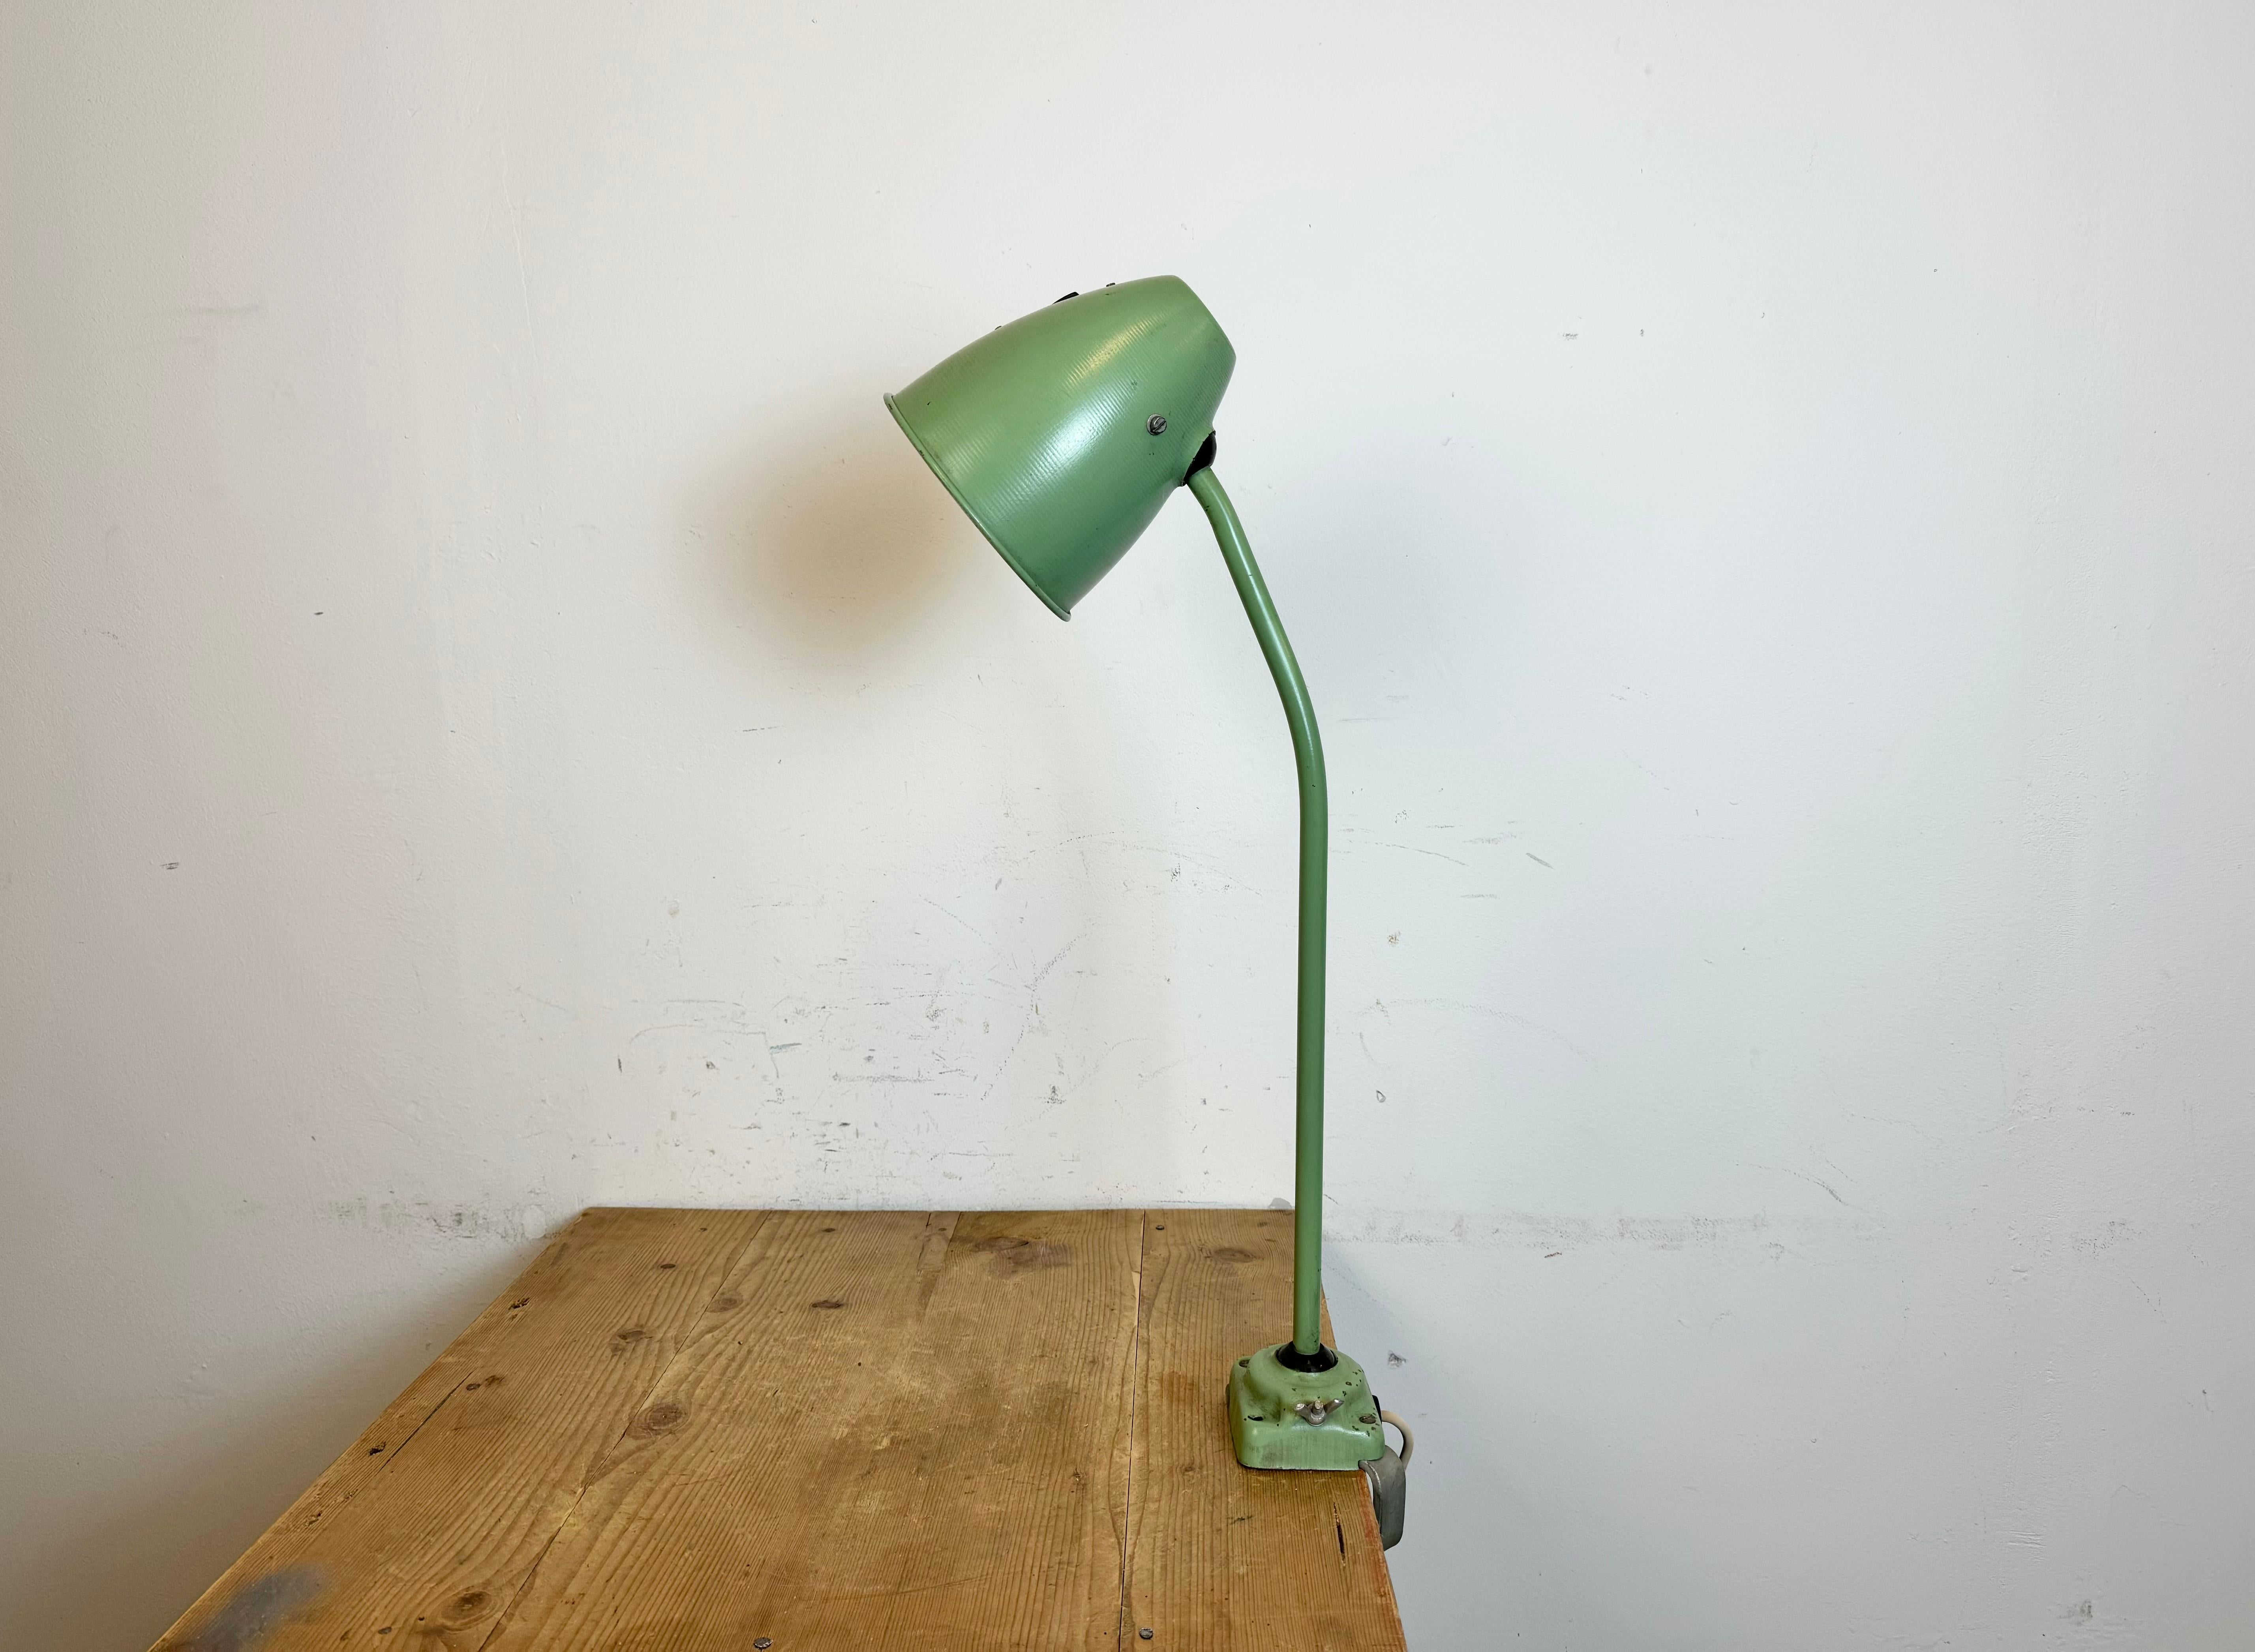 Atelier industriel vert modulable  Cette lampe de table a été fabriquée dans l'ancienne Tchécoslovaquie dans les années 1960. Elle est composée d'un abat-jour en fer, d'une base avec pince et d'un bras avec deux articulations réglables. La douille